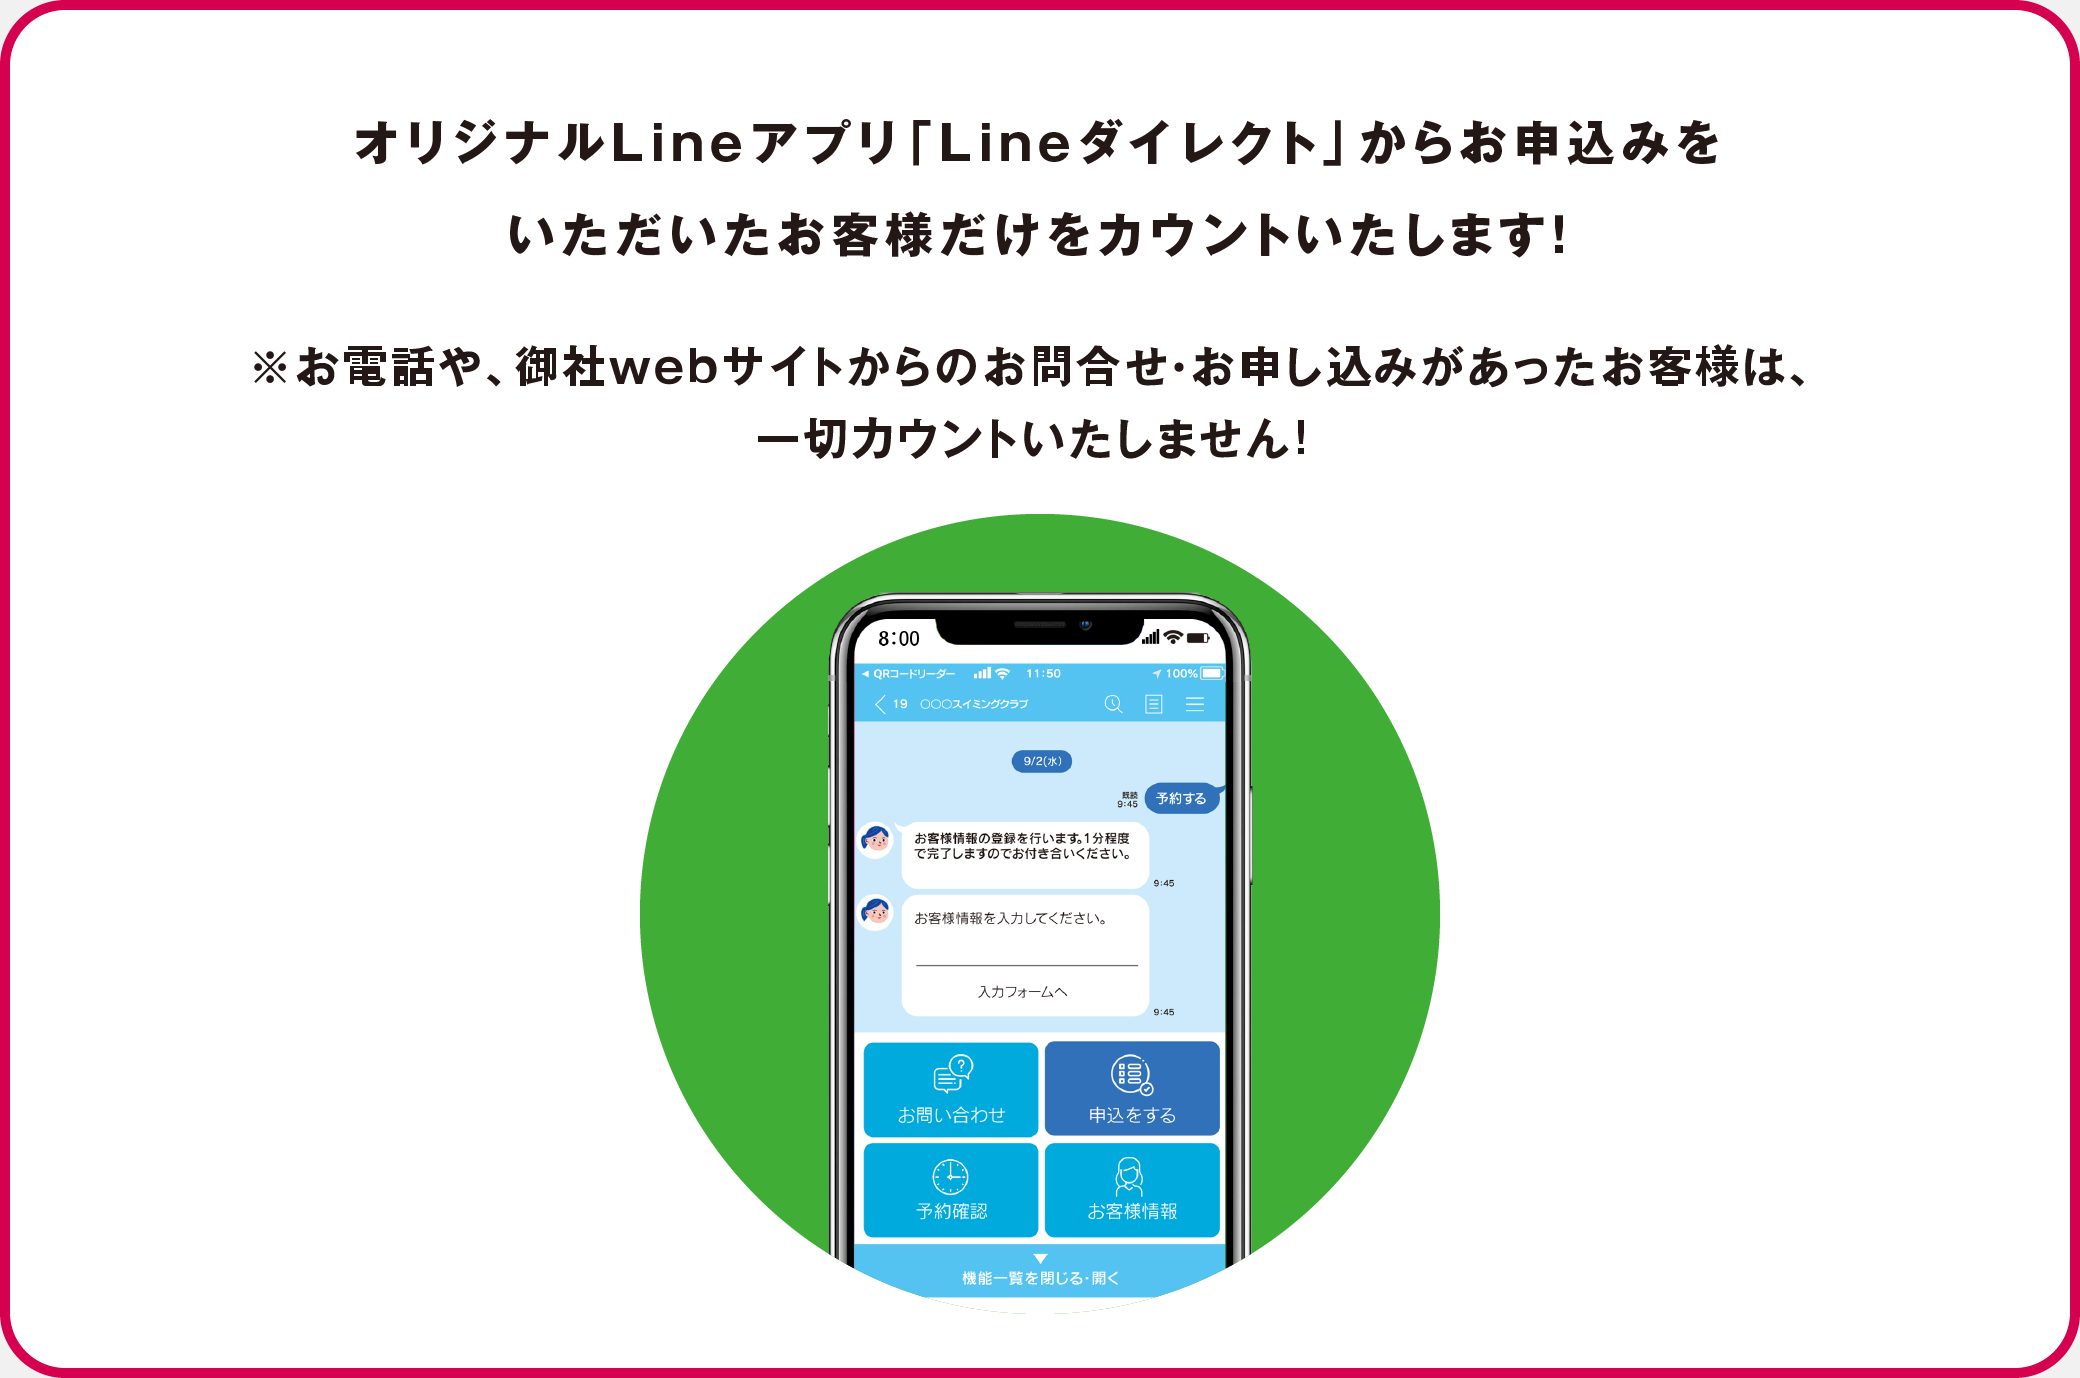 オリジナルLineアプリ「Lineダイレクト」からお申込みをいただいたお客様だけをカウントいたします！